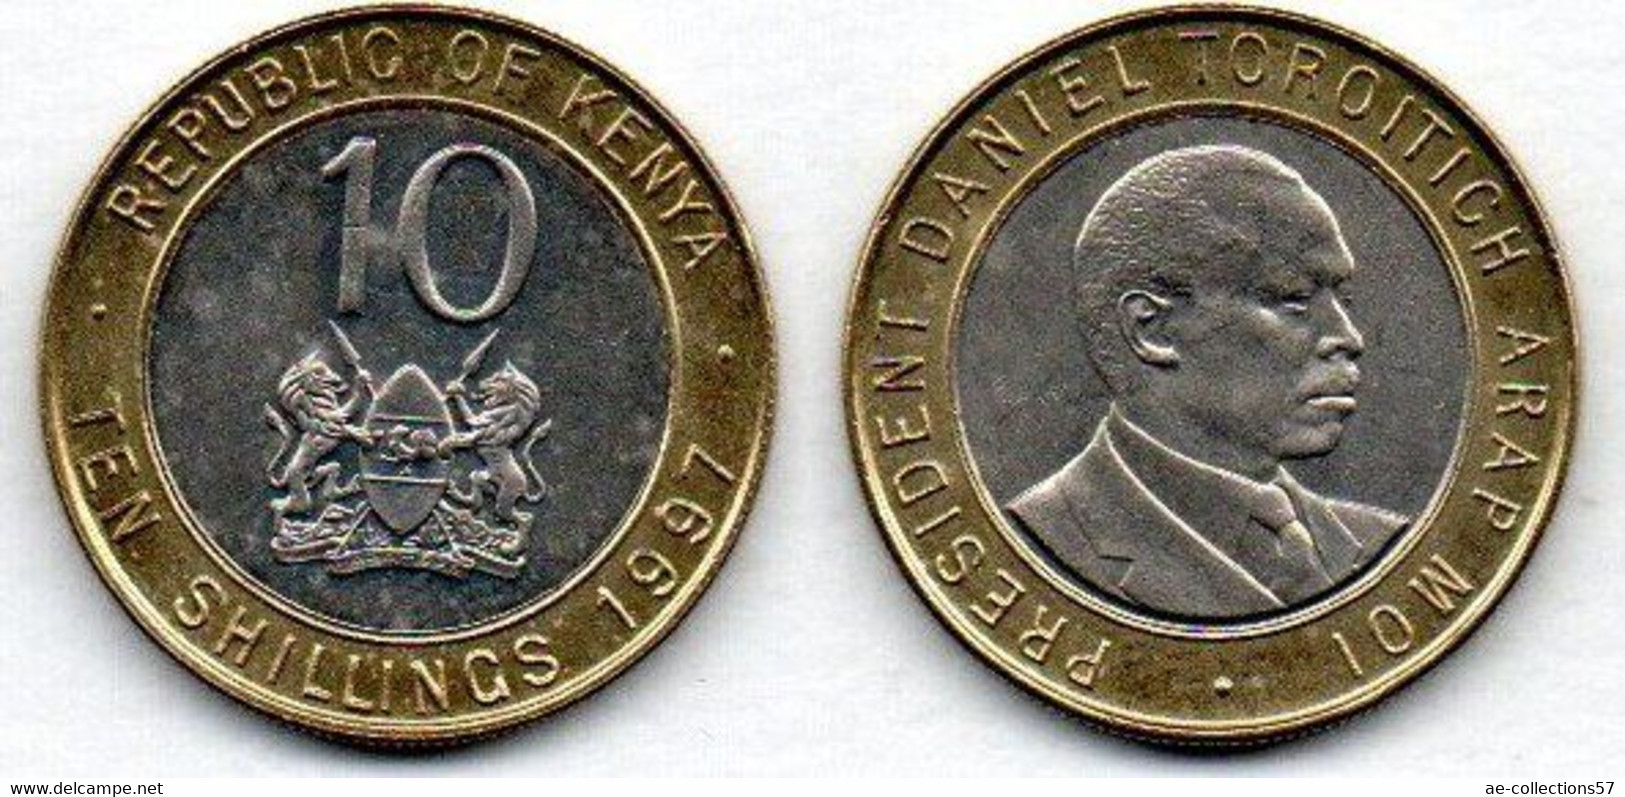 Kenya 10 Shillings 1997 SUP+ - Kenia